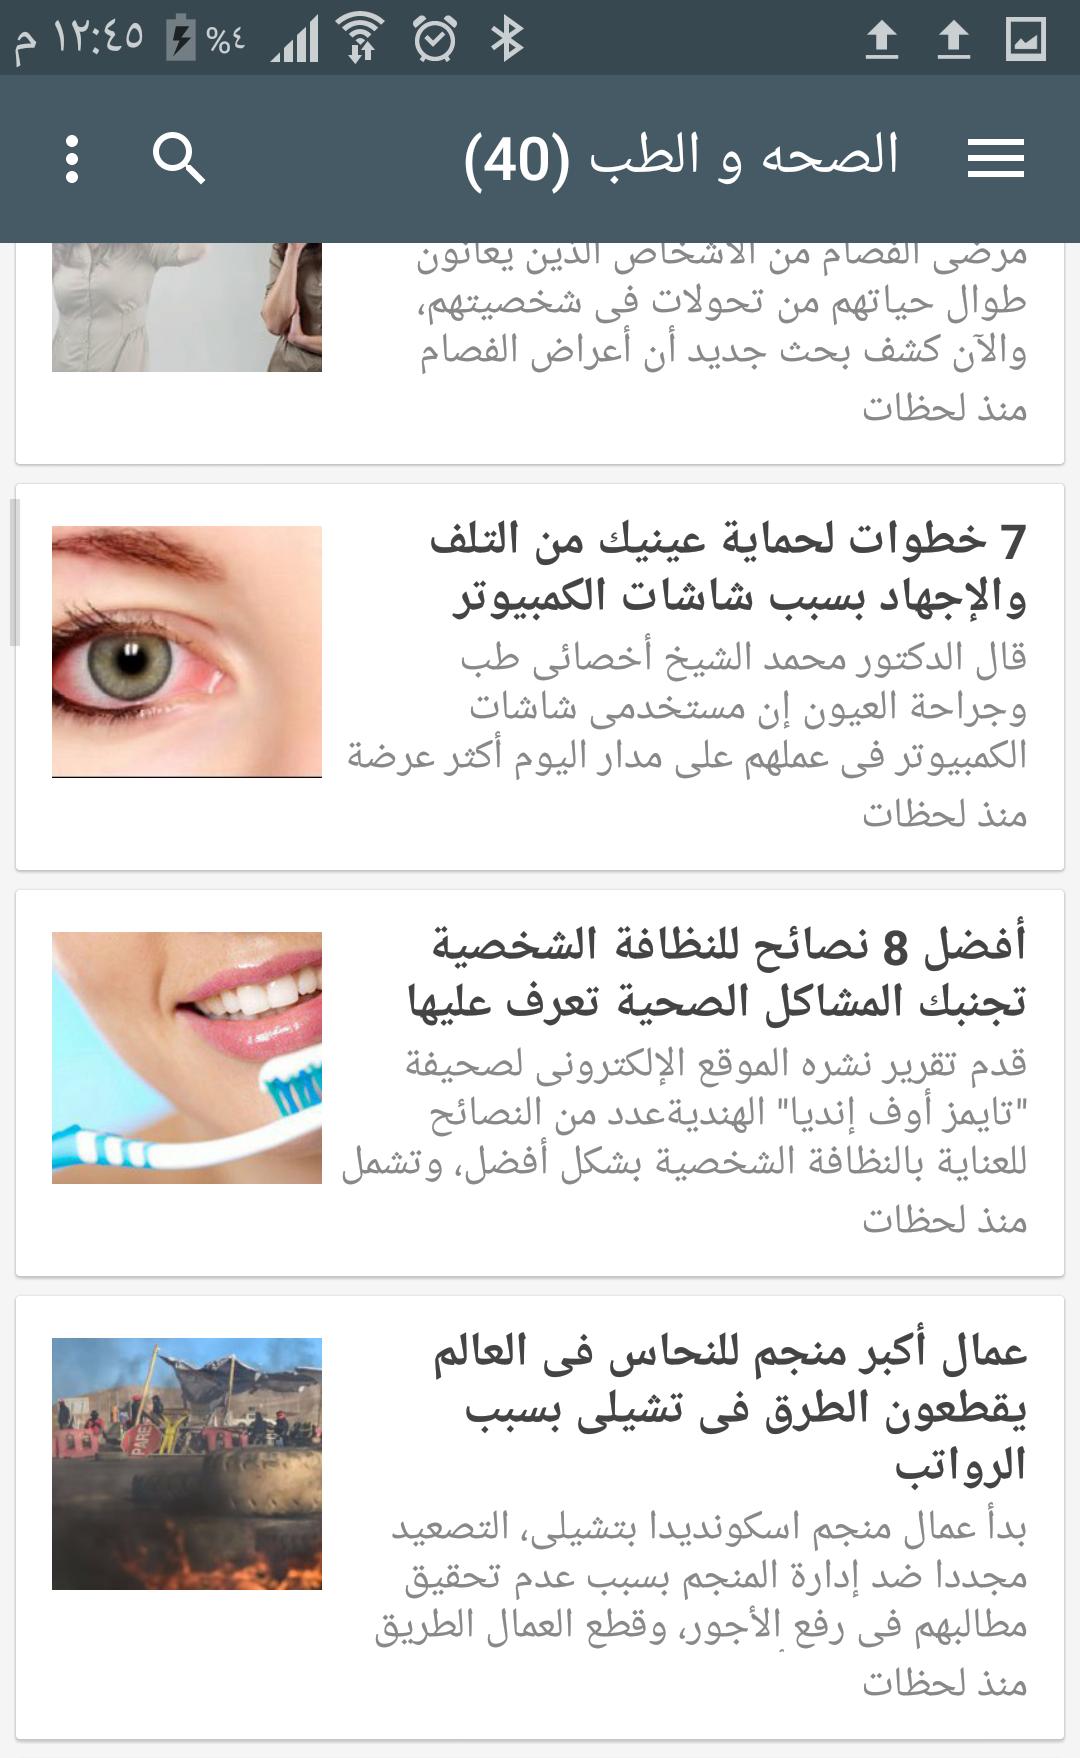 اخبار السعودية العاجله for Android - APK Download